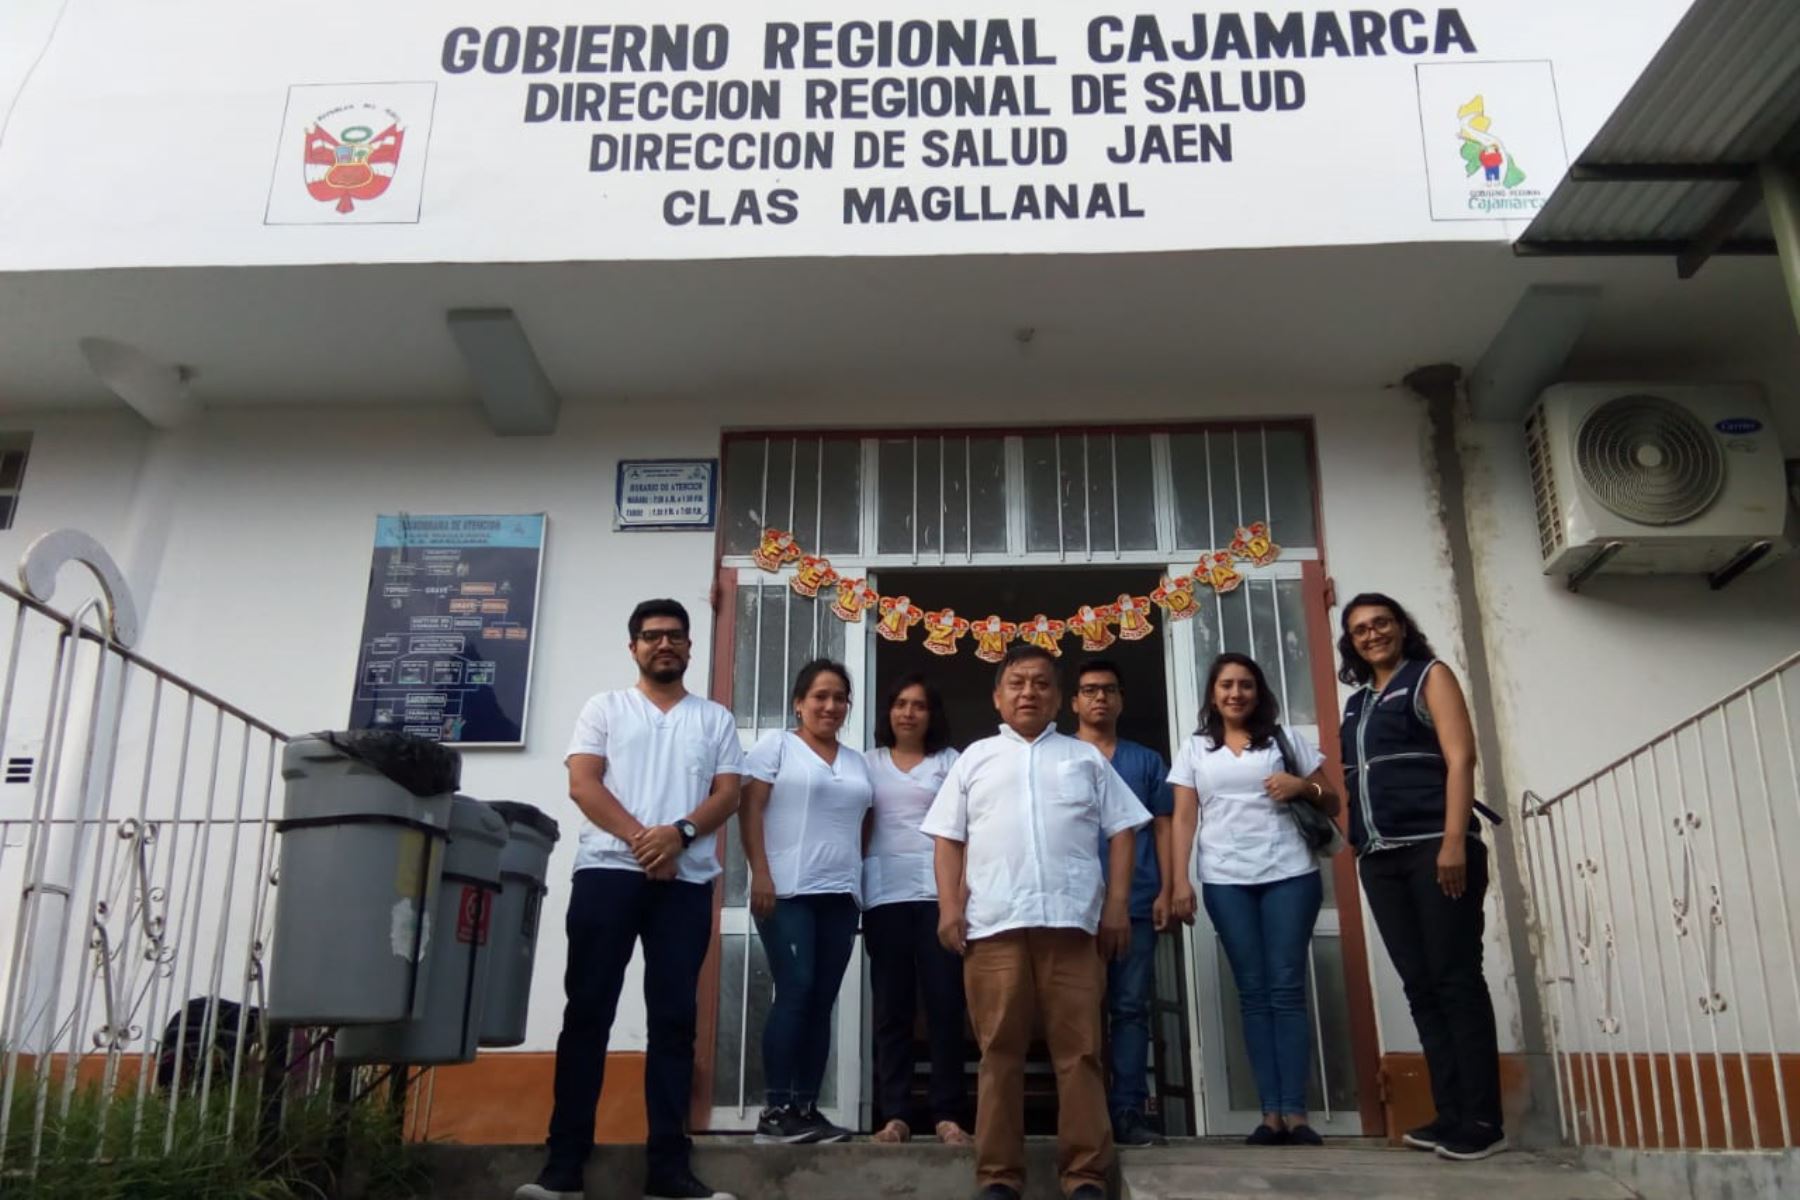 Establecimientos de salud de la Dirección de Salud de Jaén (Cajamarca) se sumaron a la Red Nacional de Telesalud.